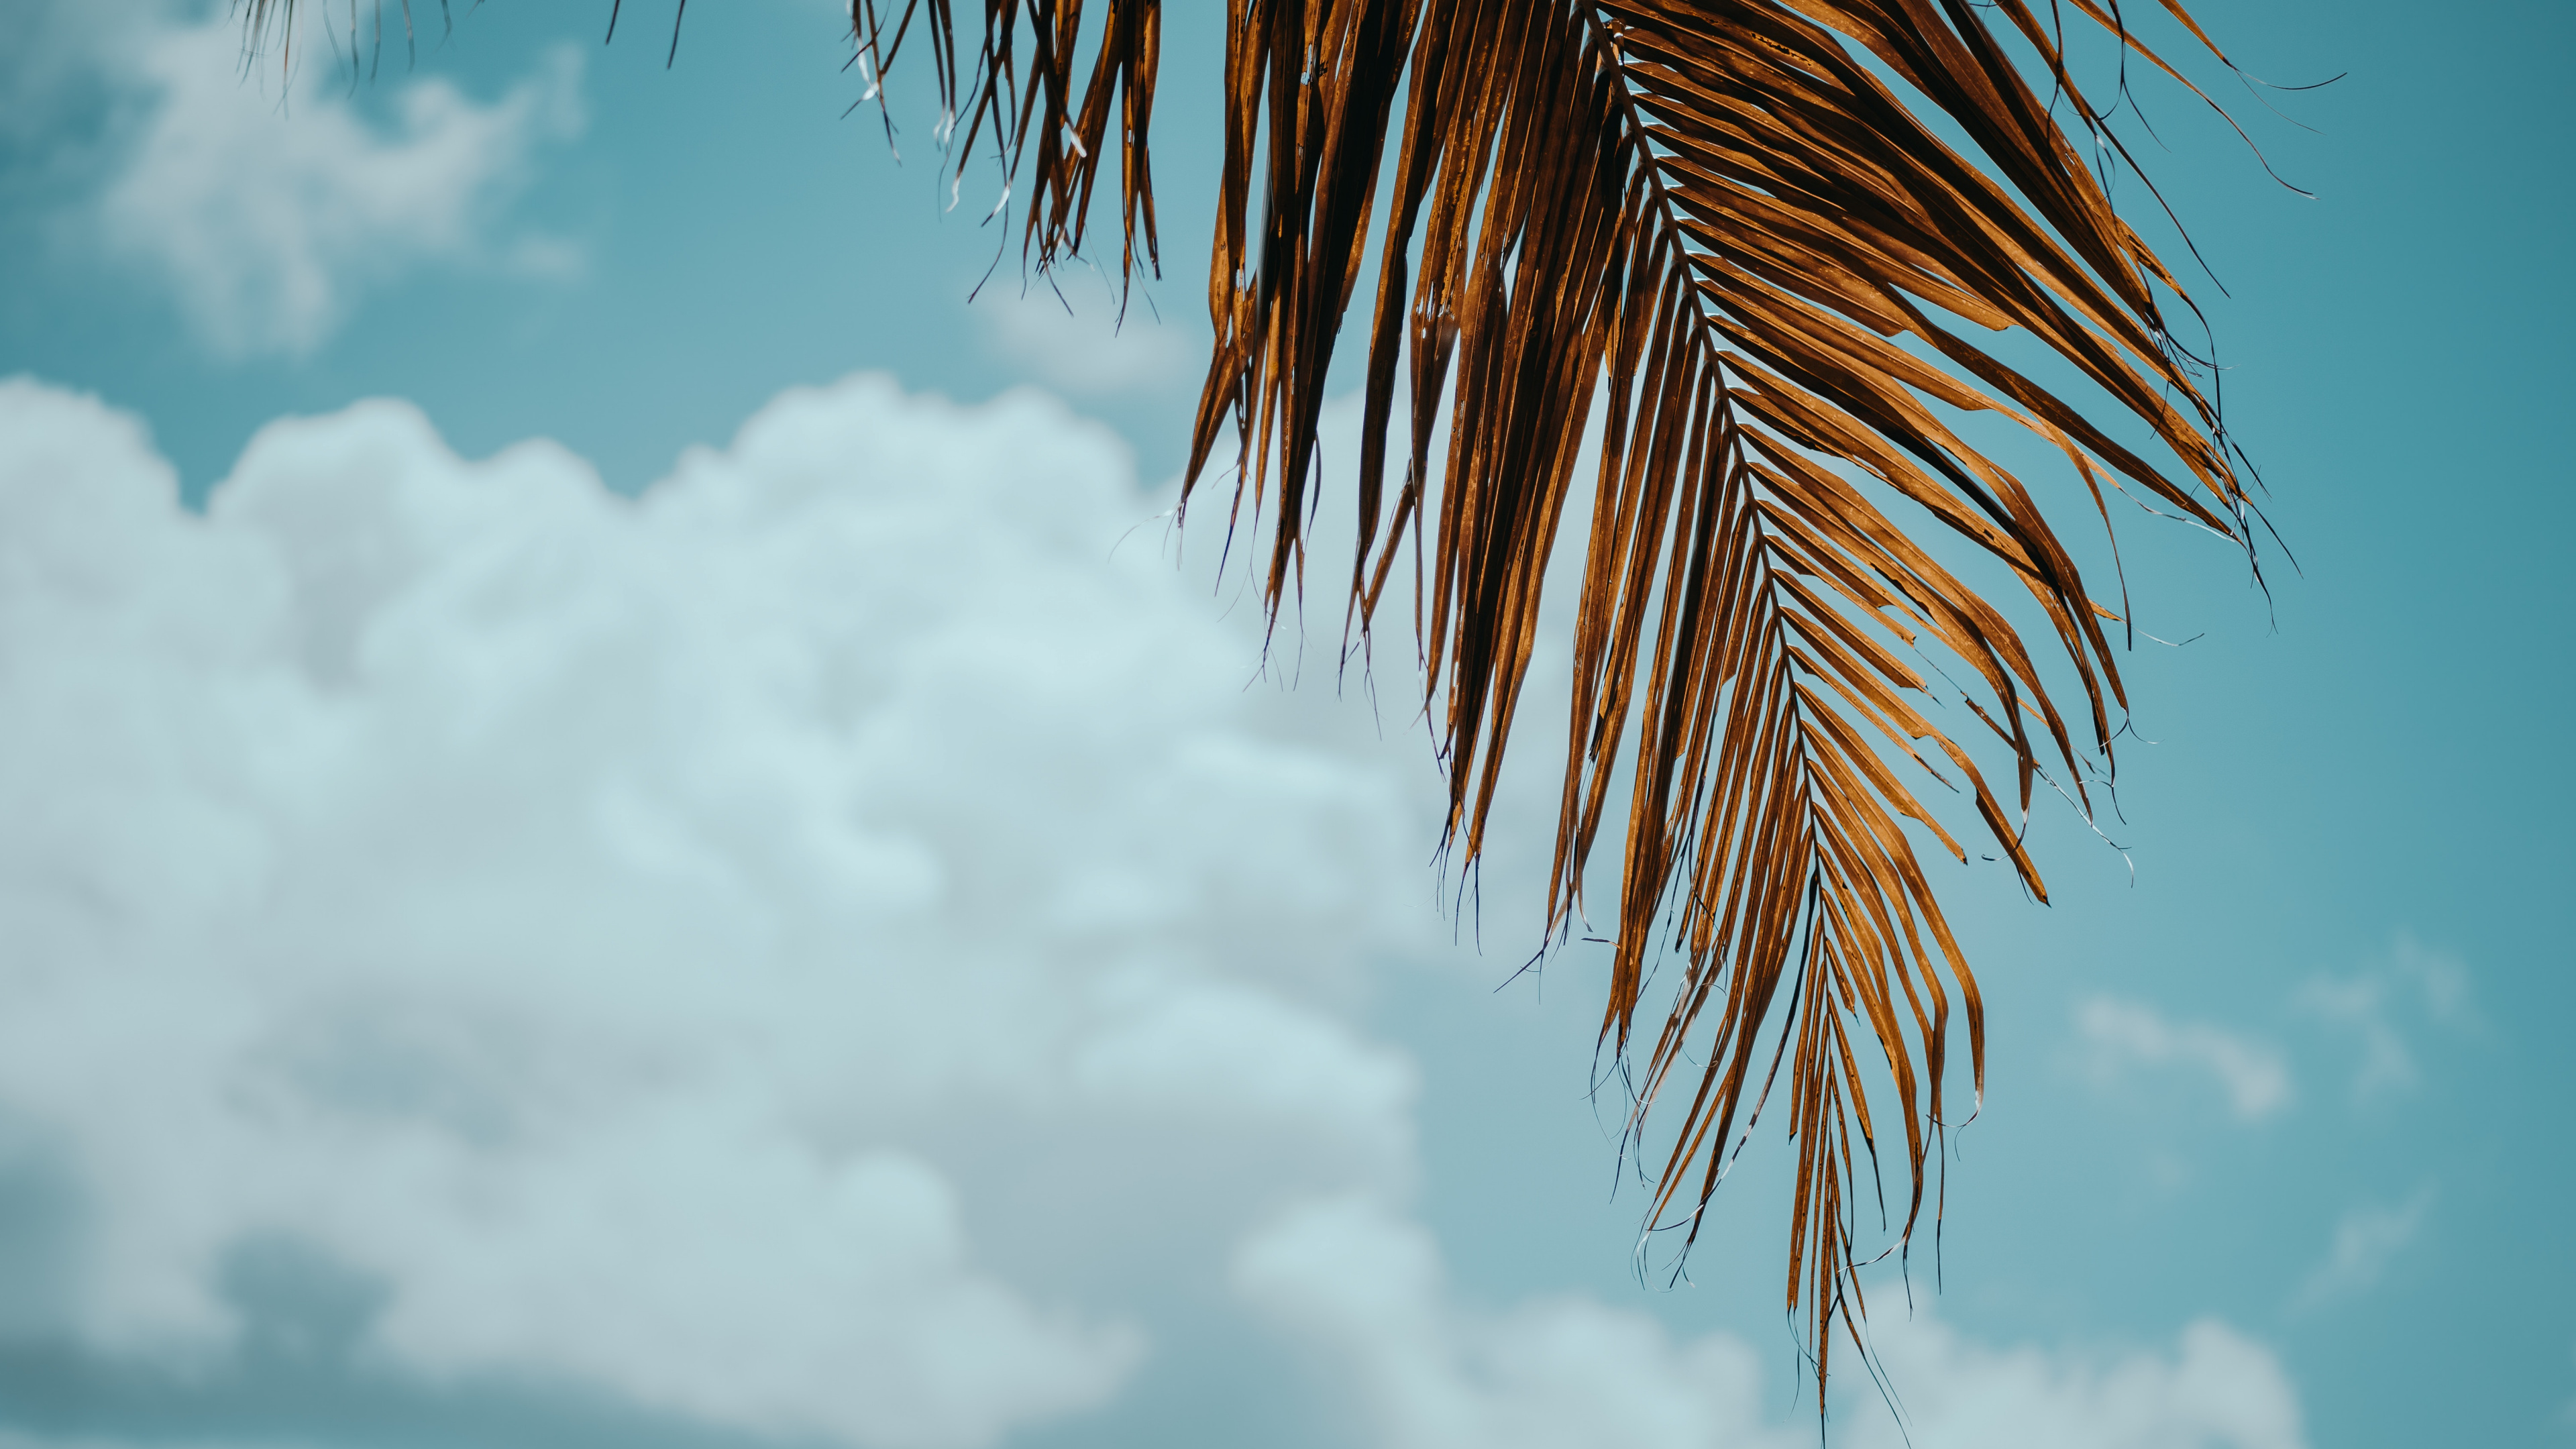 棕榈树, 热带地区, 木本植物, 云计算, 一天 壁纸 3840x2160 允许